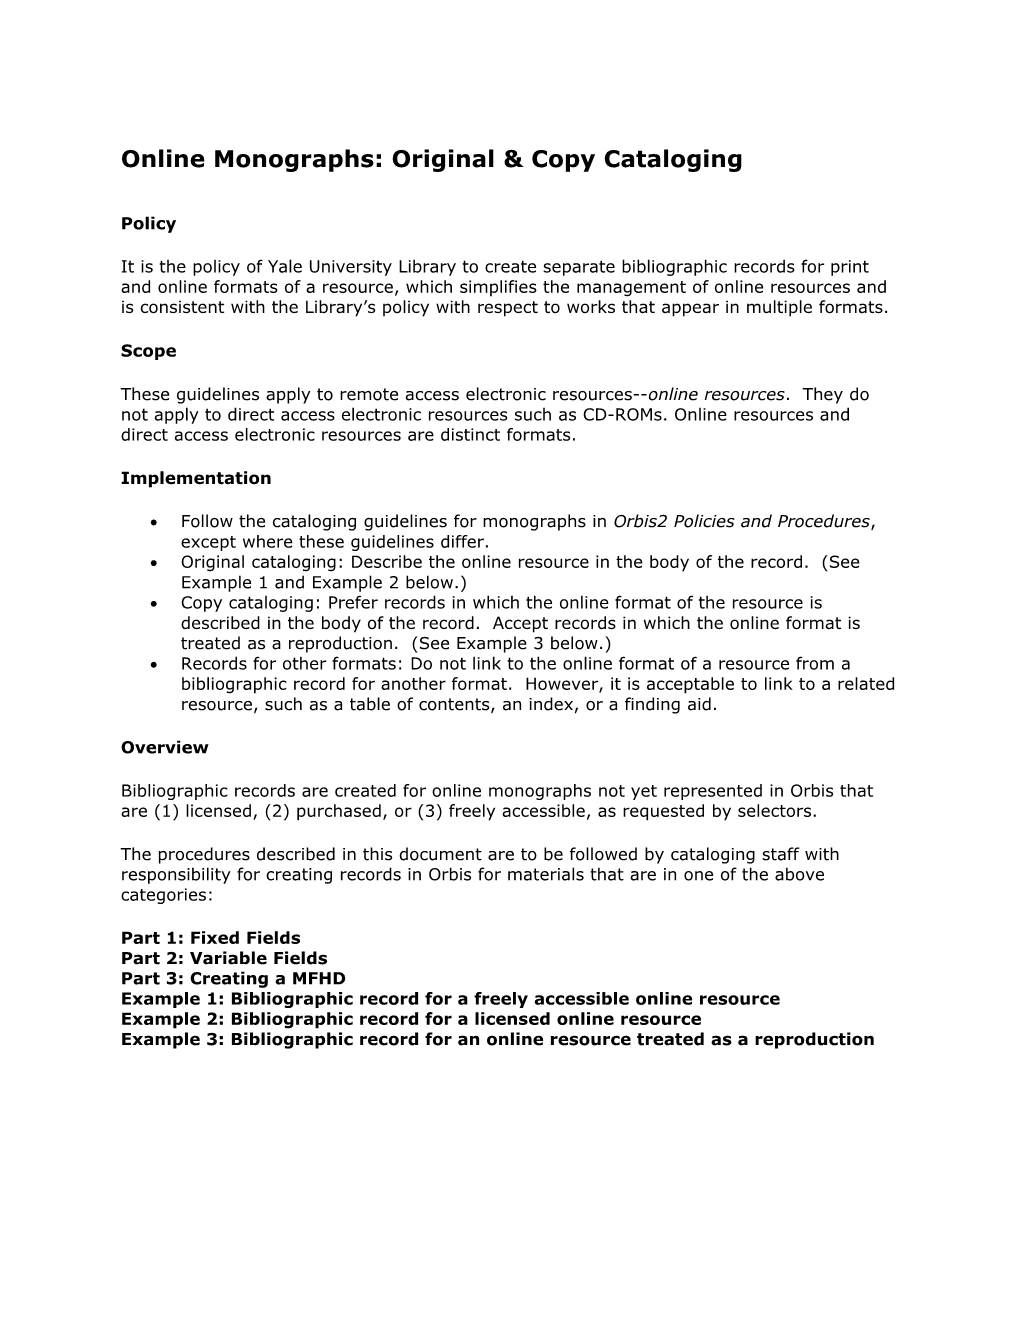 E-Monographs Original Cataloging DRAFT